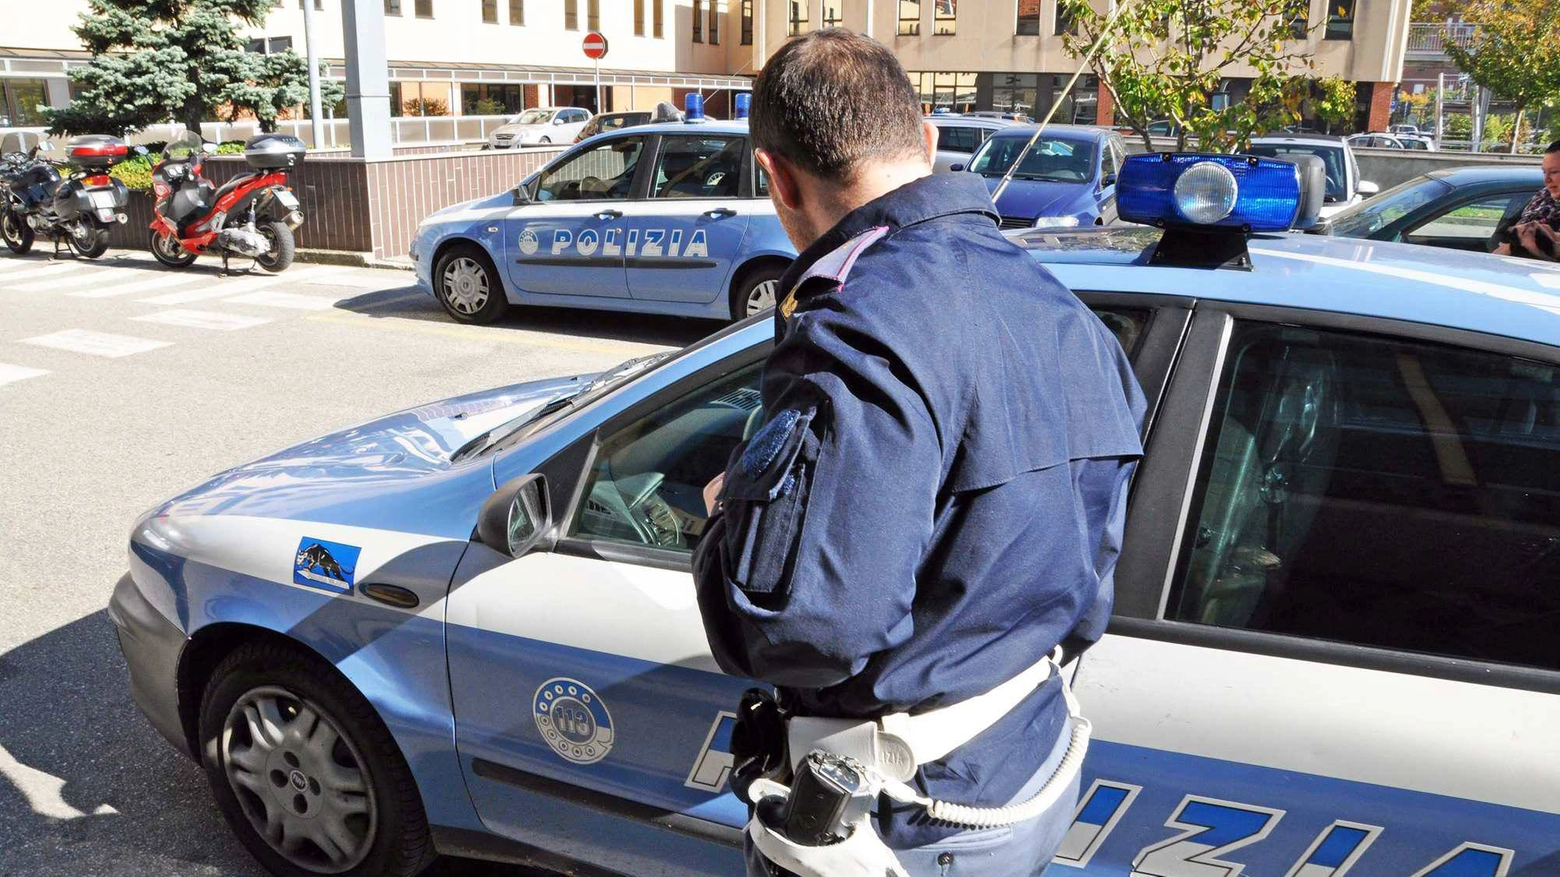 La polizia di Treviglio ha individuato la donna dopo una delicata indagine